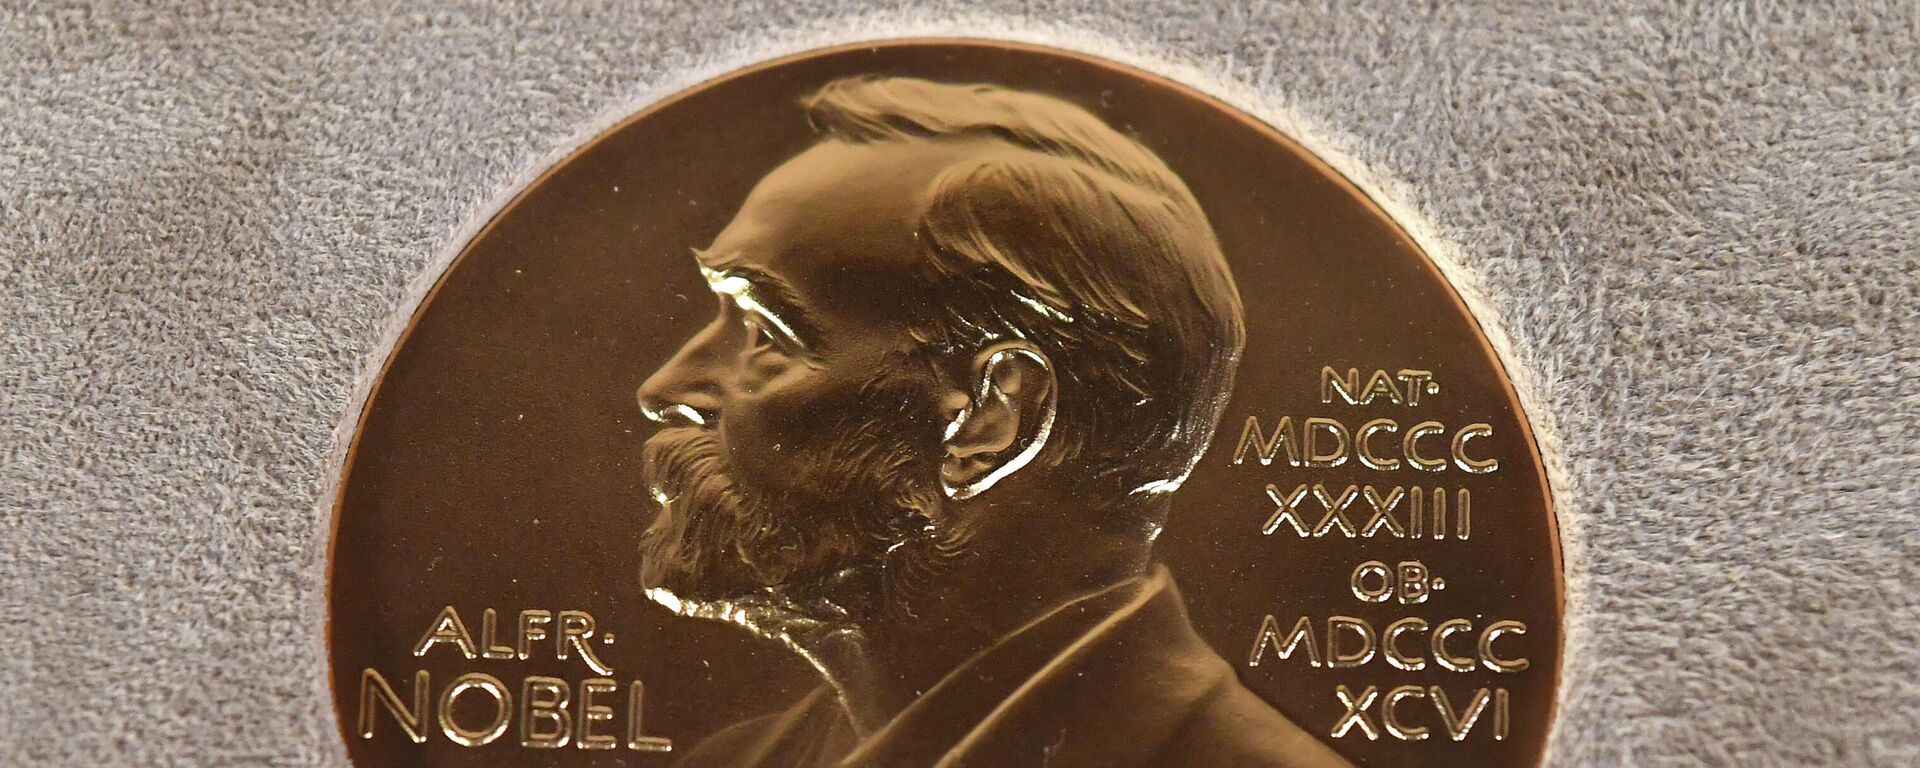 Медаль Нобелевской премии, фото из архива - Sputnik Азербайджан, 1920, 11.10.2021